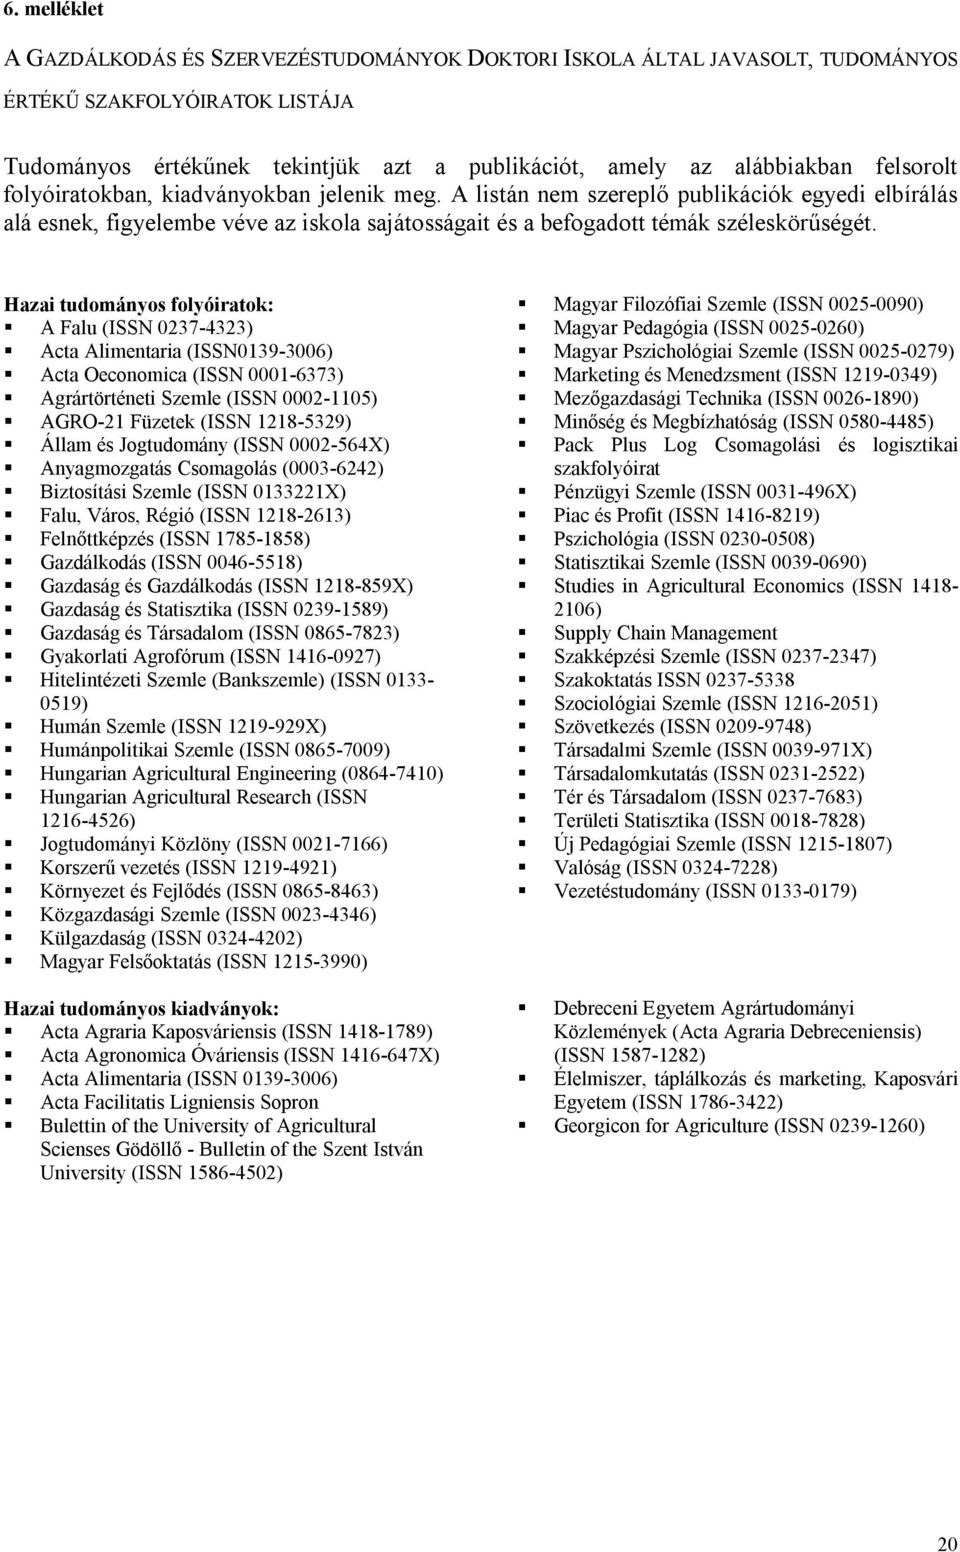 Hazai tudományos folyóiratok: A Falu (ISSN 0237-4323) Acta Alimentaria (ISSN0139-3006) Acta Oeconomica (ISSN 0001-6373) Agrártörténeti Szemle (ISSN 0002-1105) AGRO-21 Füzetek (ISSN 1218-5329) Állam